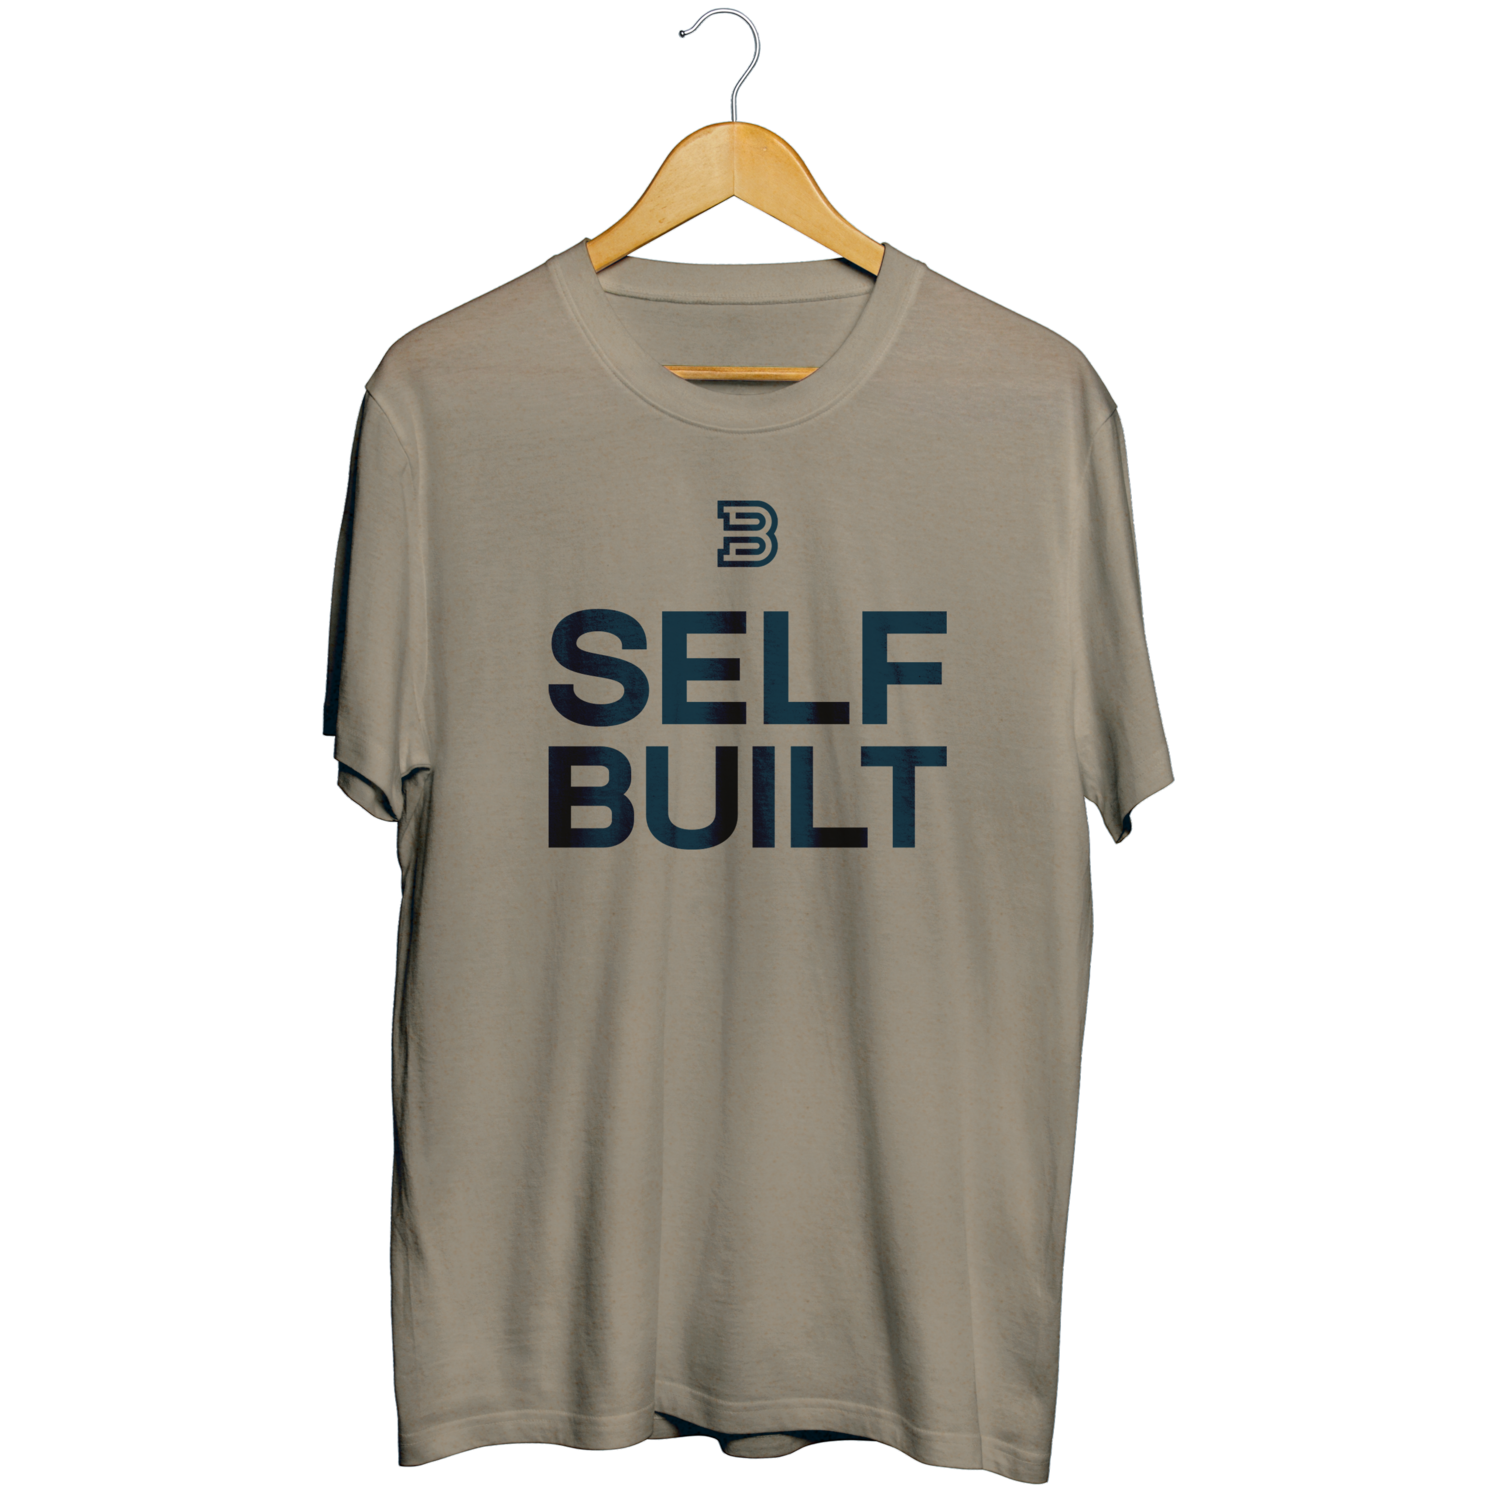 Built Shirt - Self Built